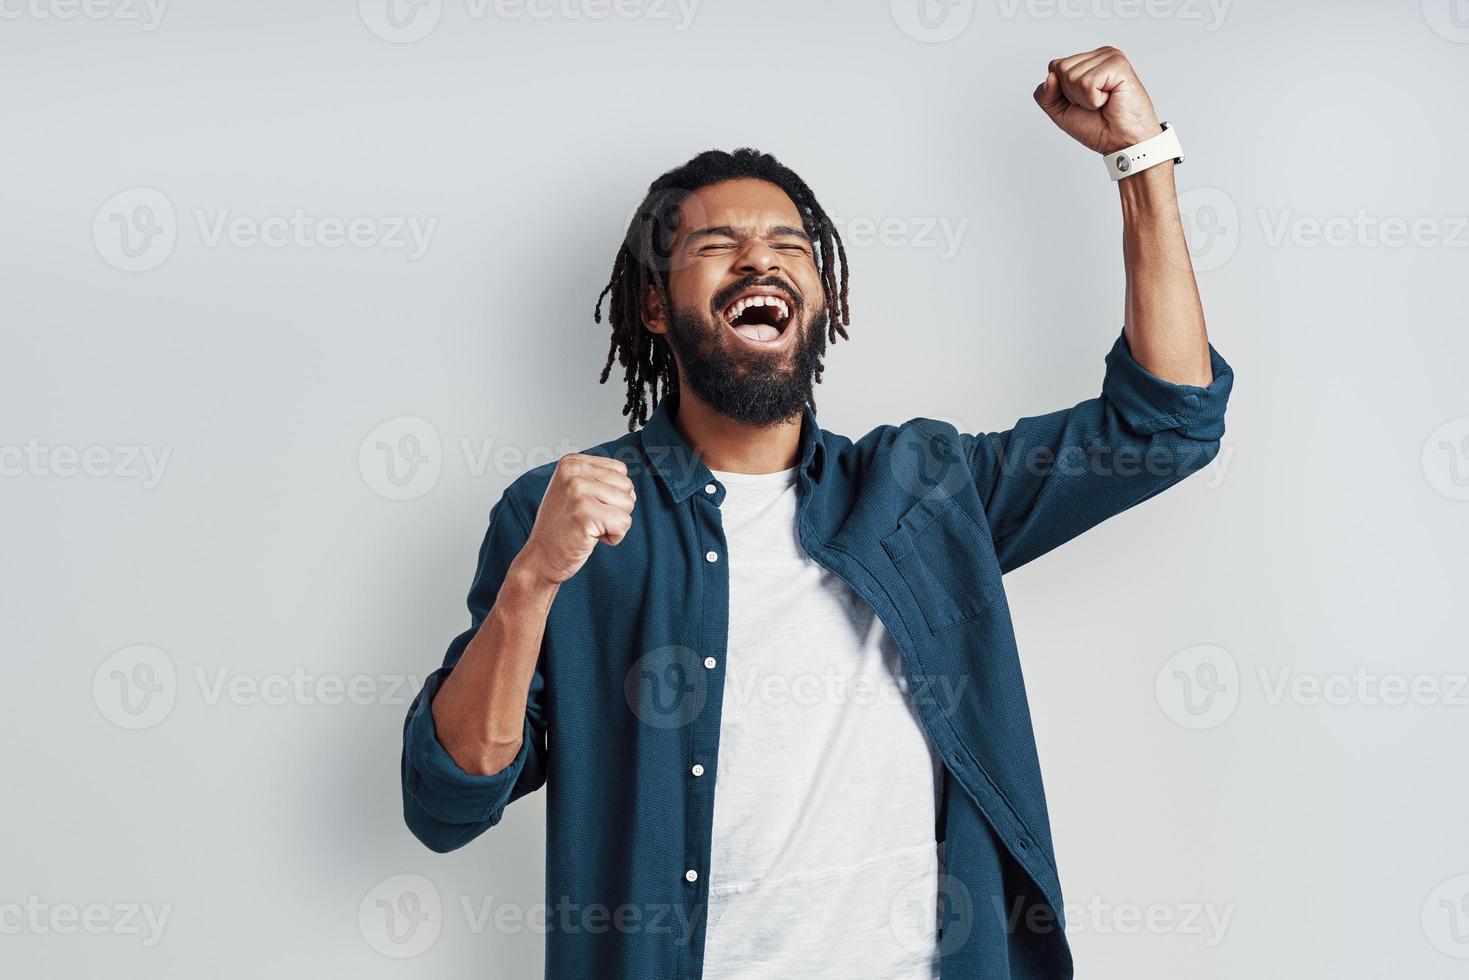 alegre jovem africano em roupas casuais, gritando e gesticulando em pé contra um fundo cinza foto